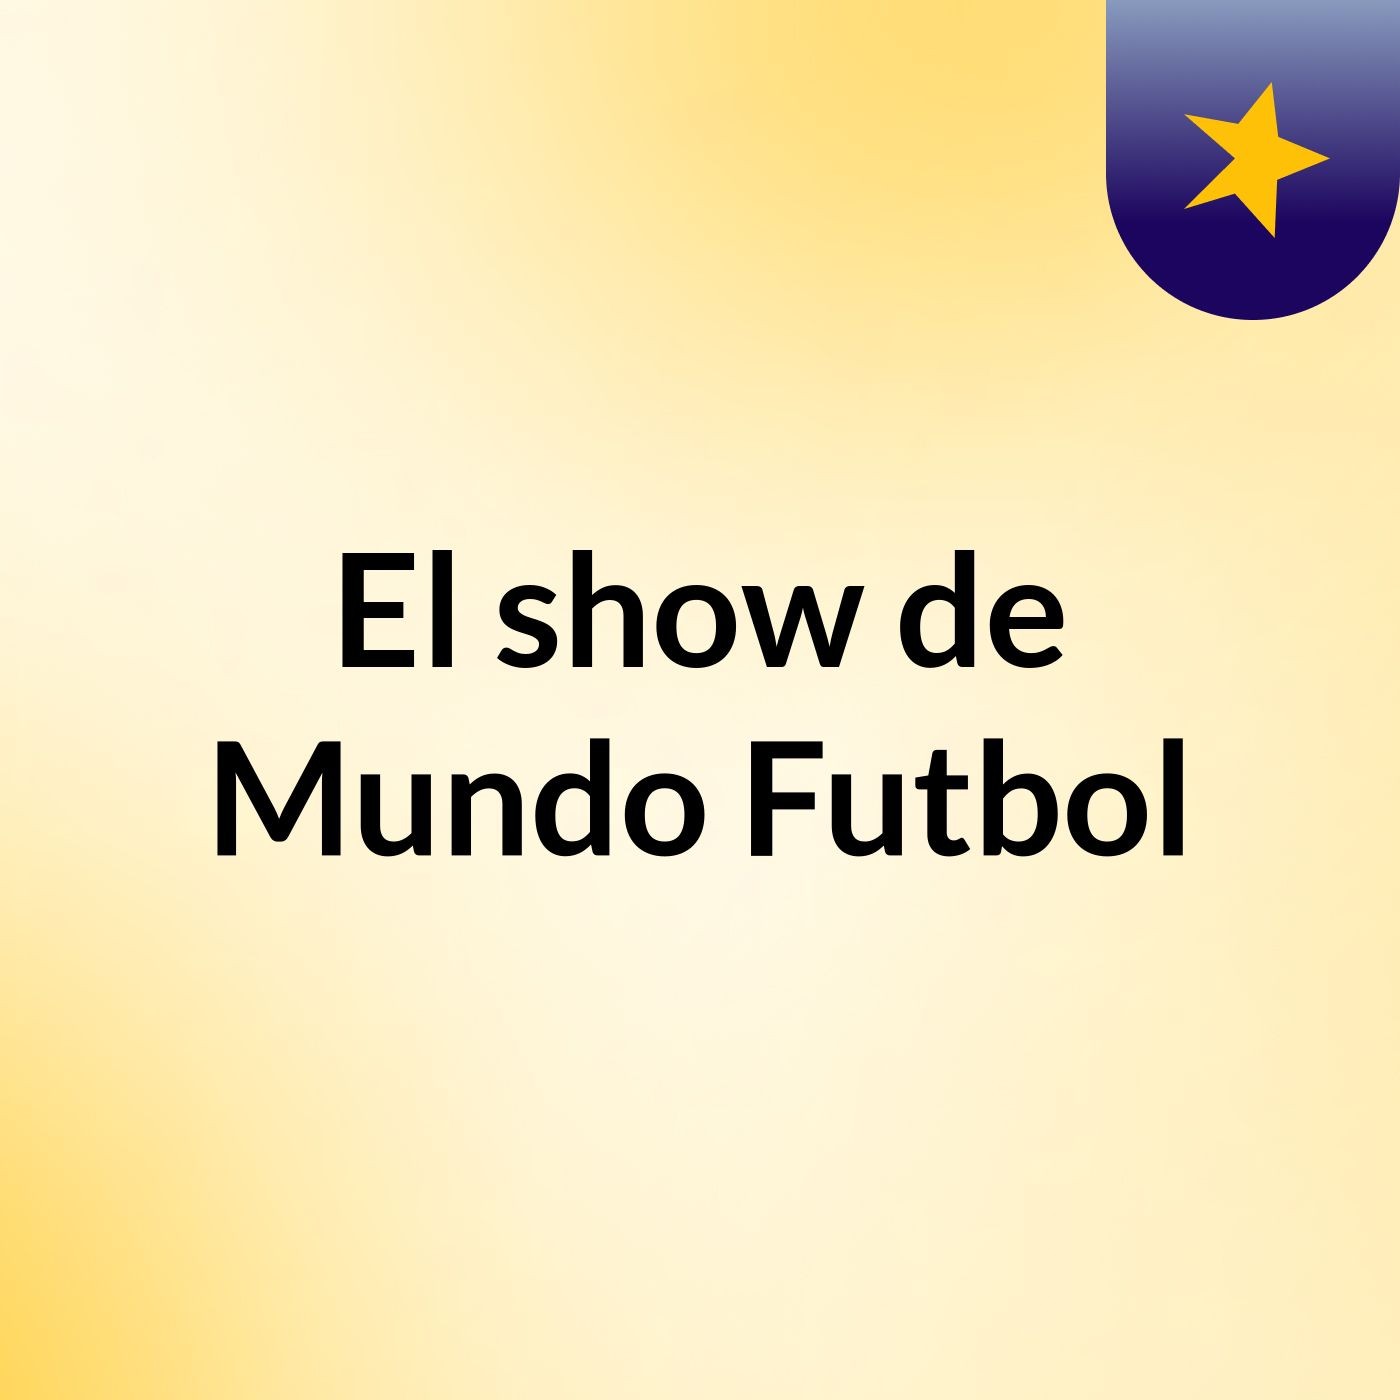 El show de Mundo Futbol